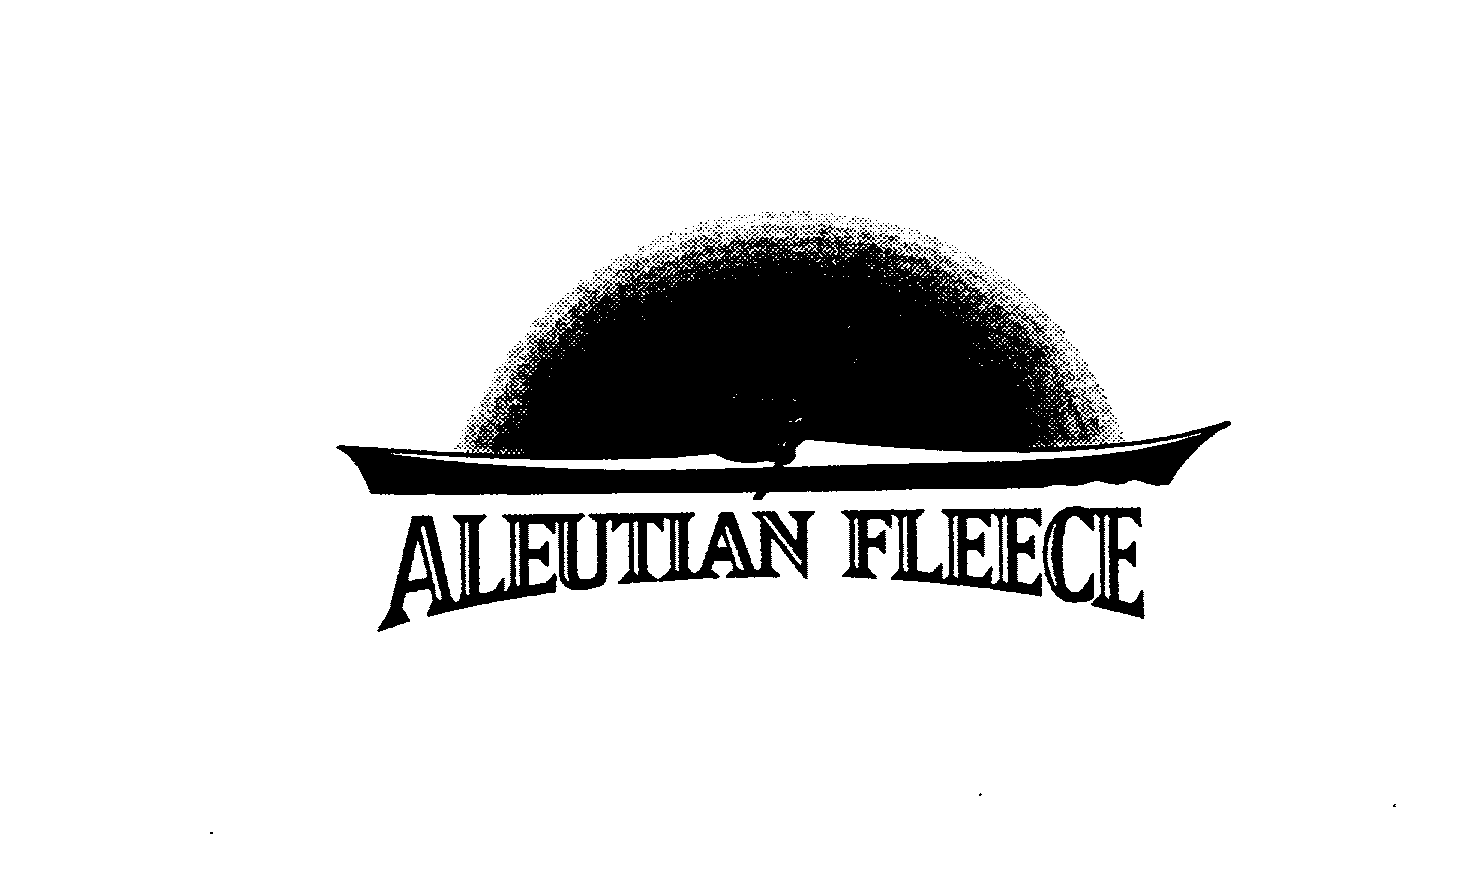  ALEUTIAN FLEECE